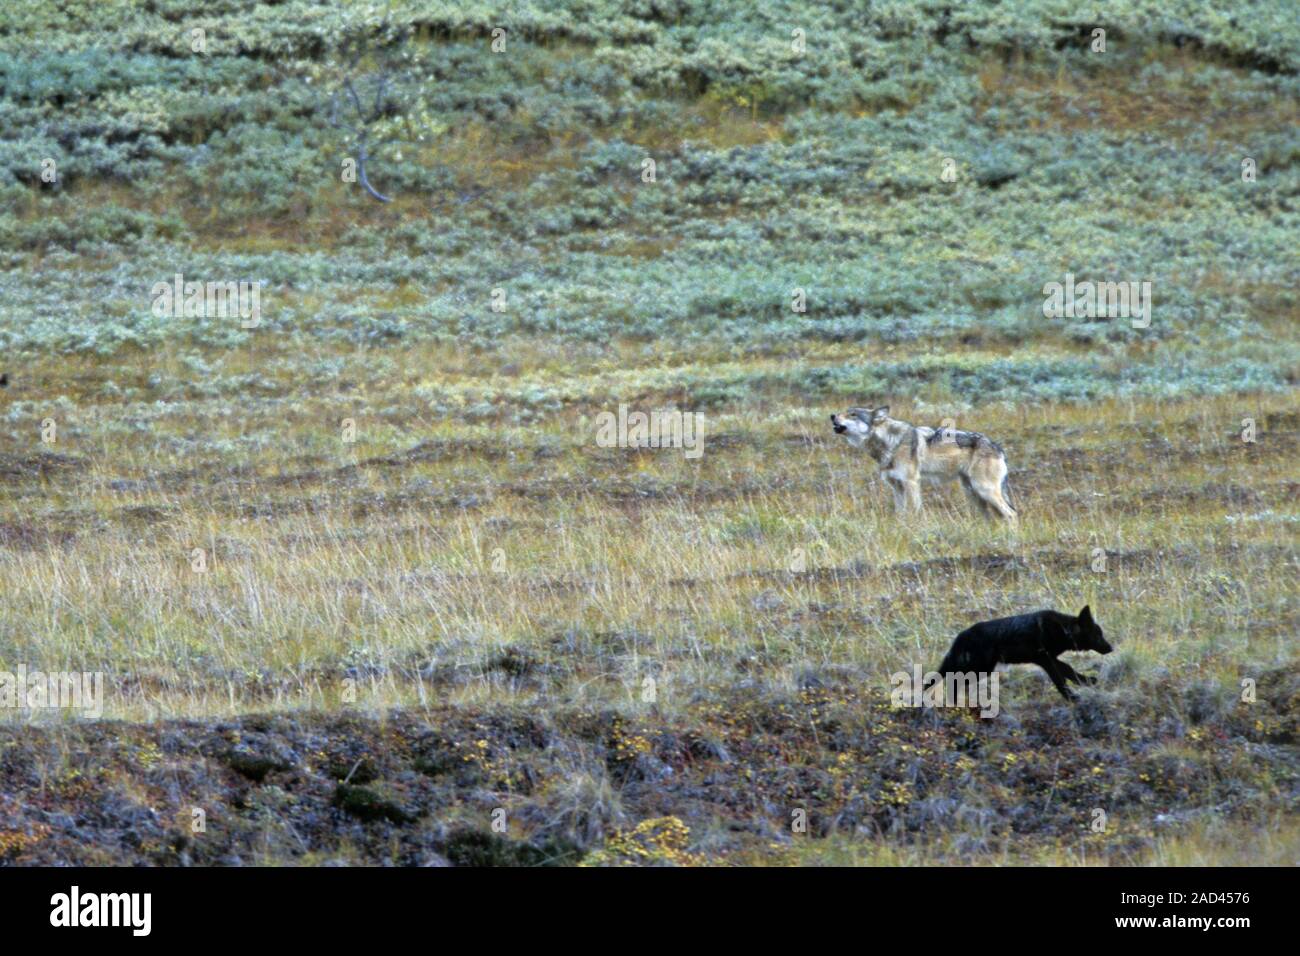 Loup adultes met en garde les petits avec un grizzli de hurlements Banque D'Images